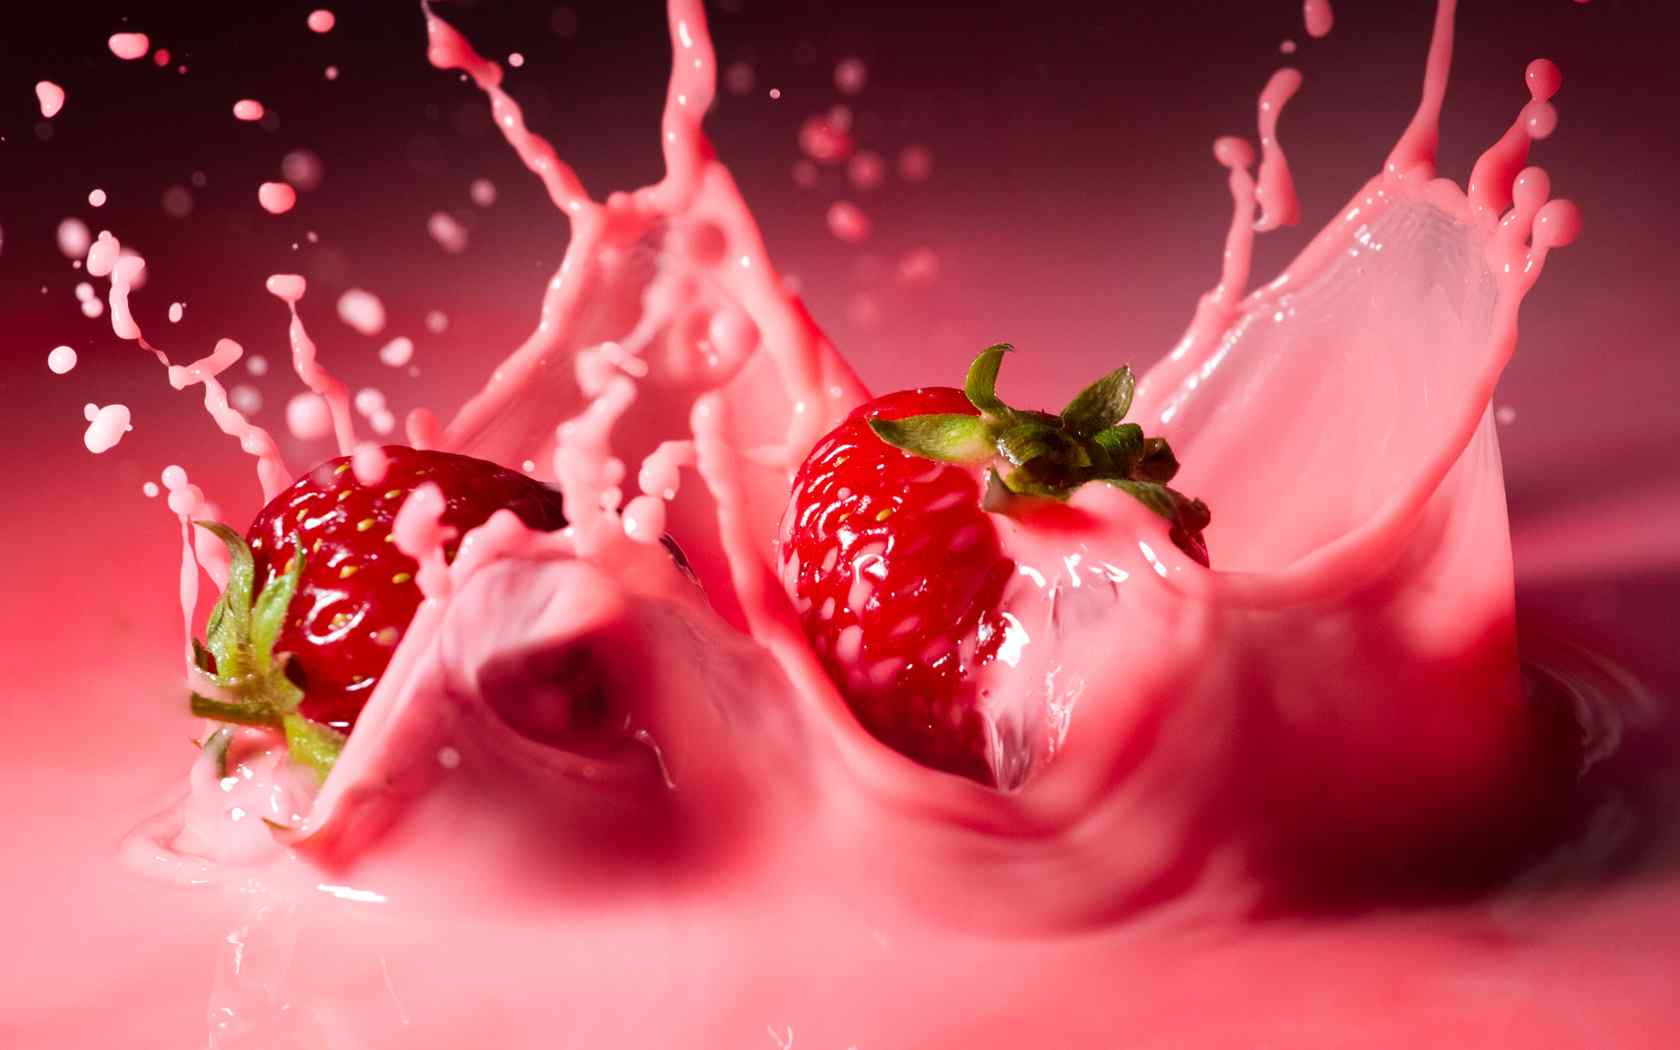 草莓牛奶精美壁纸